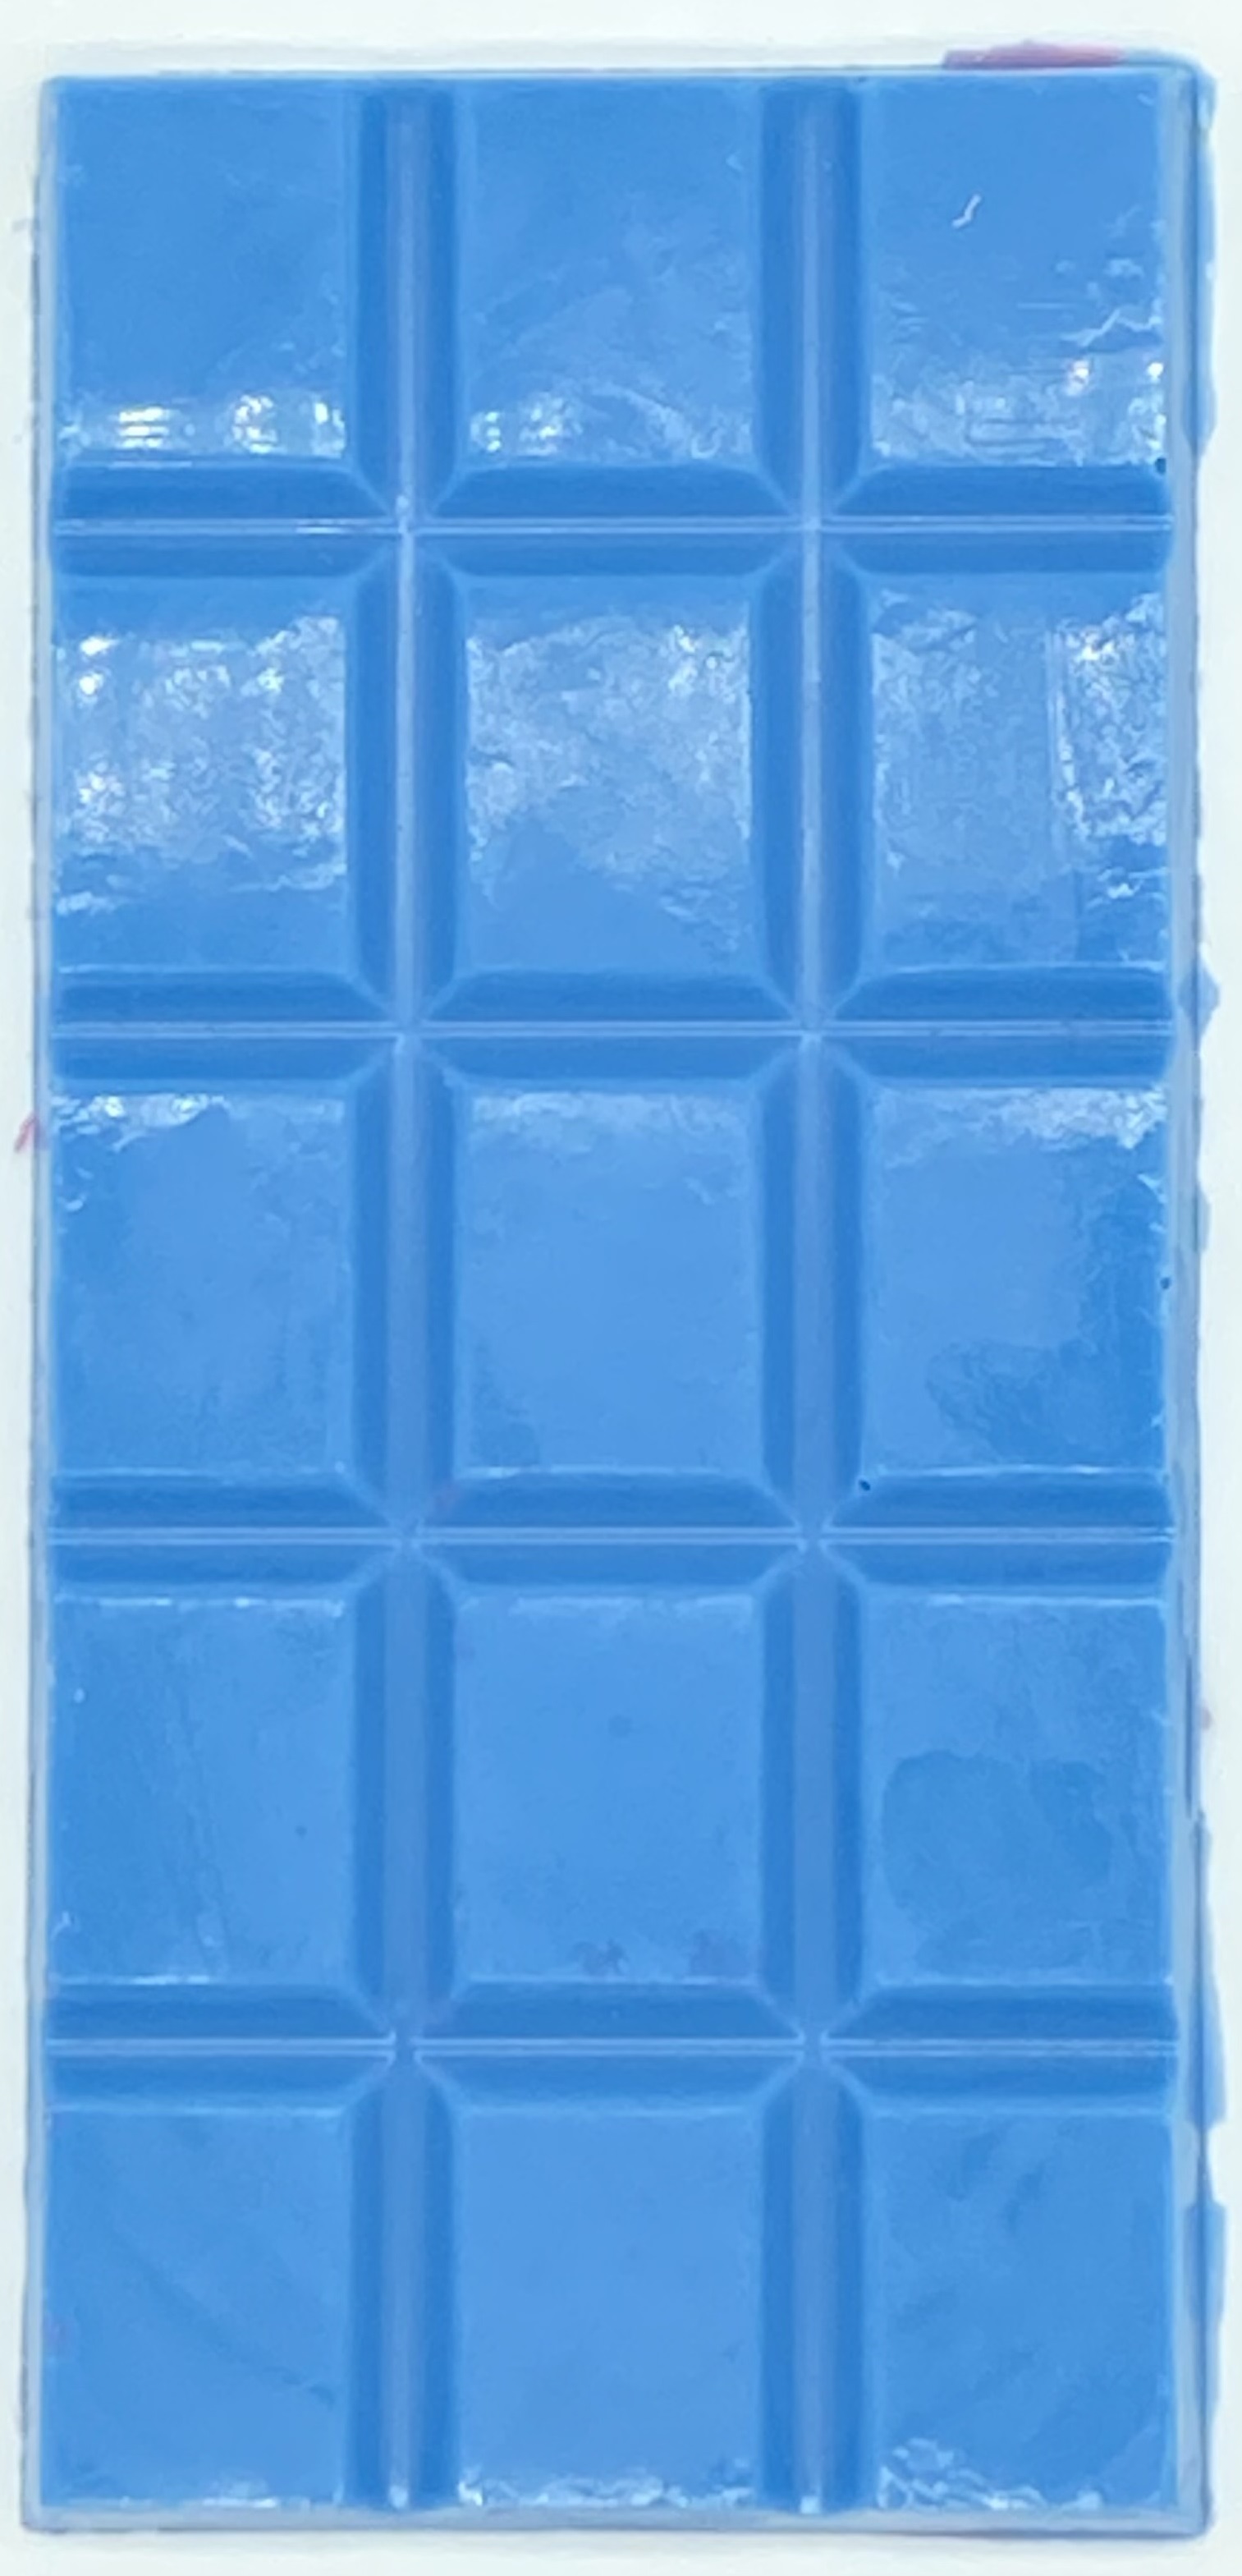 spirulina blue chocolate bar